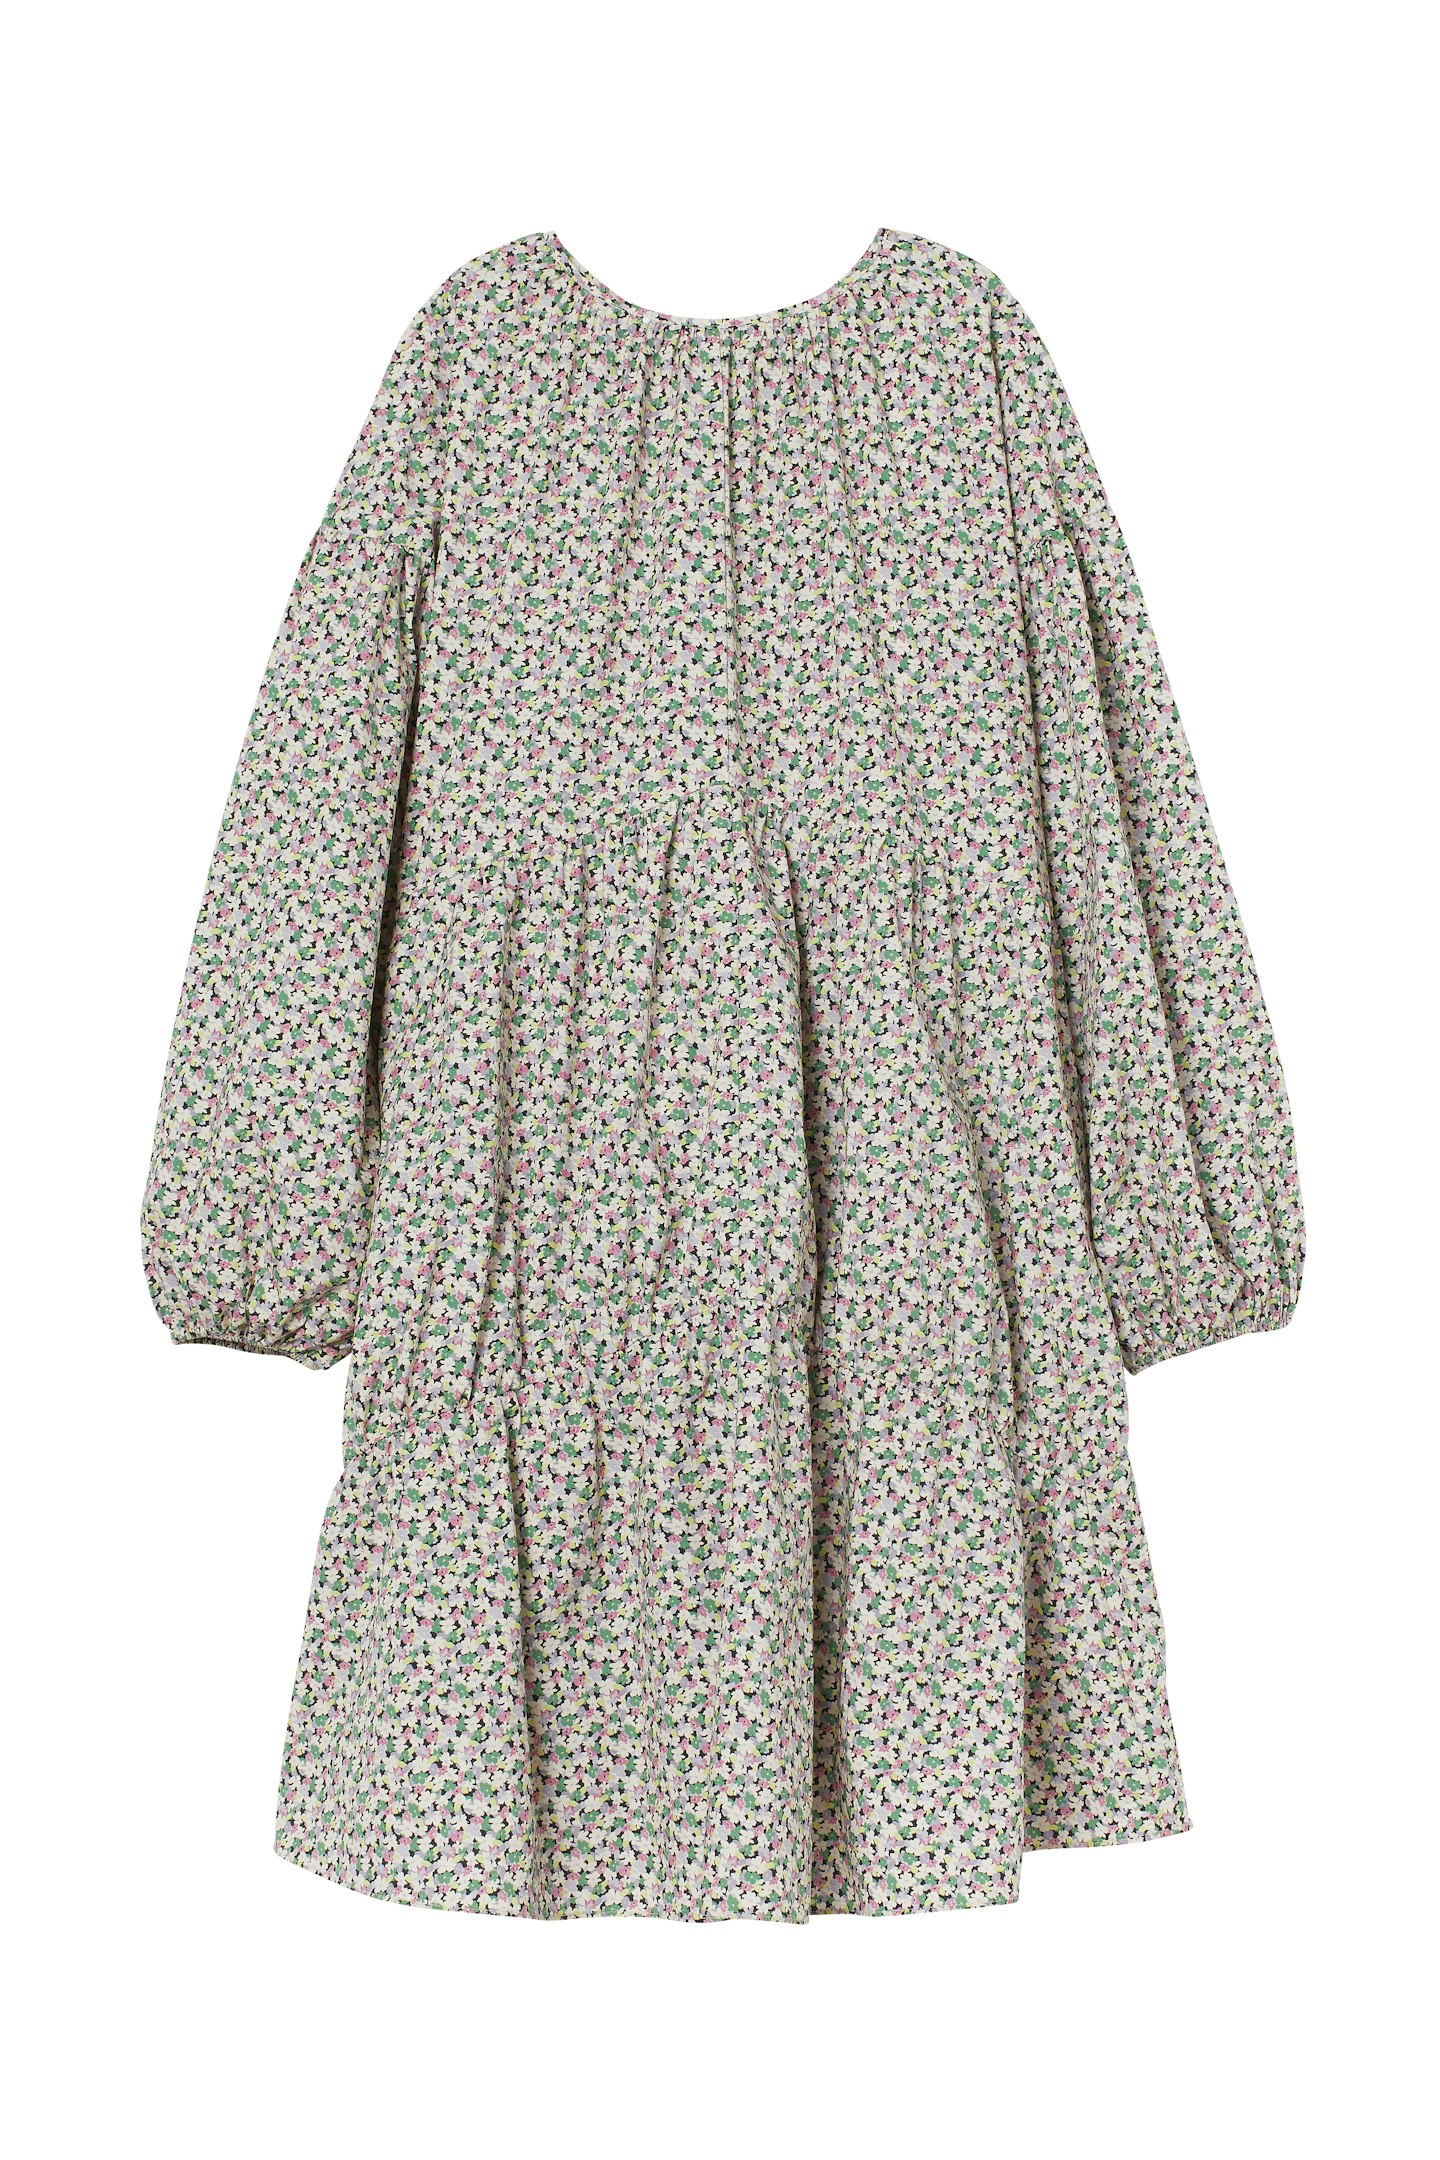 A-Line Cotton Dress, £19.99